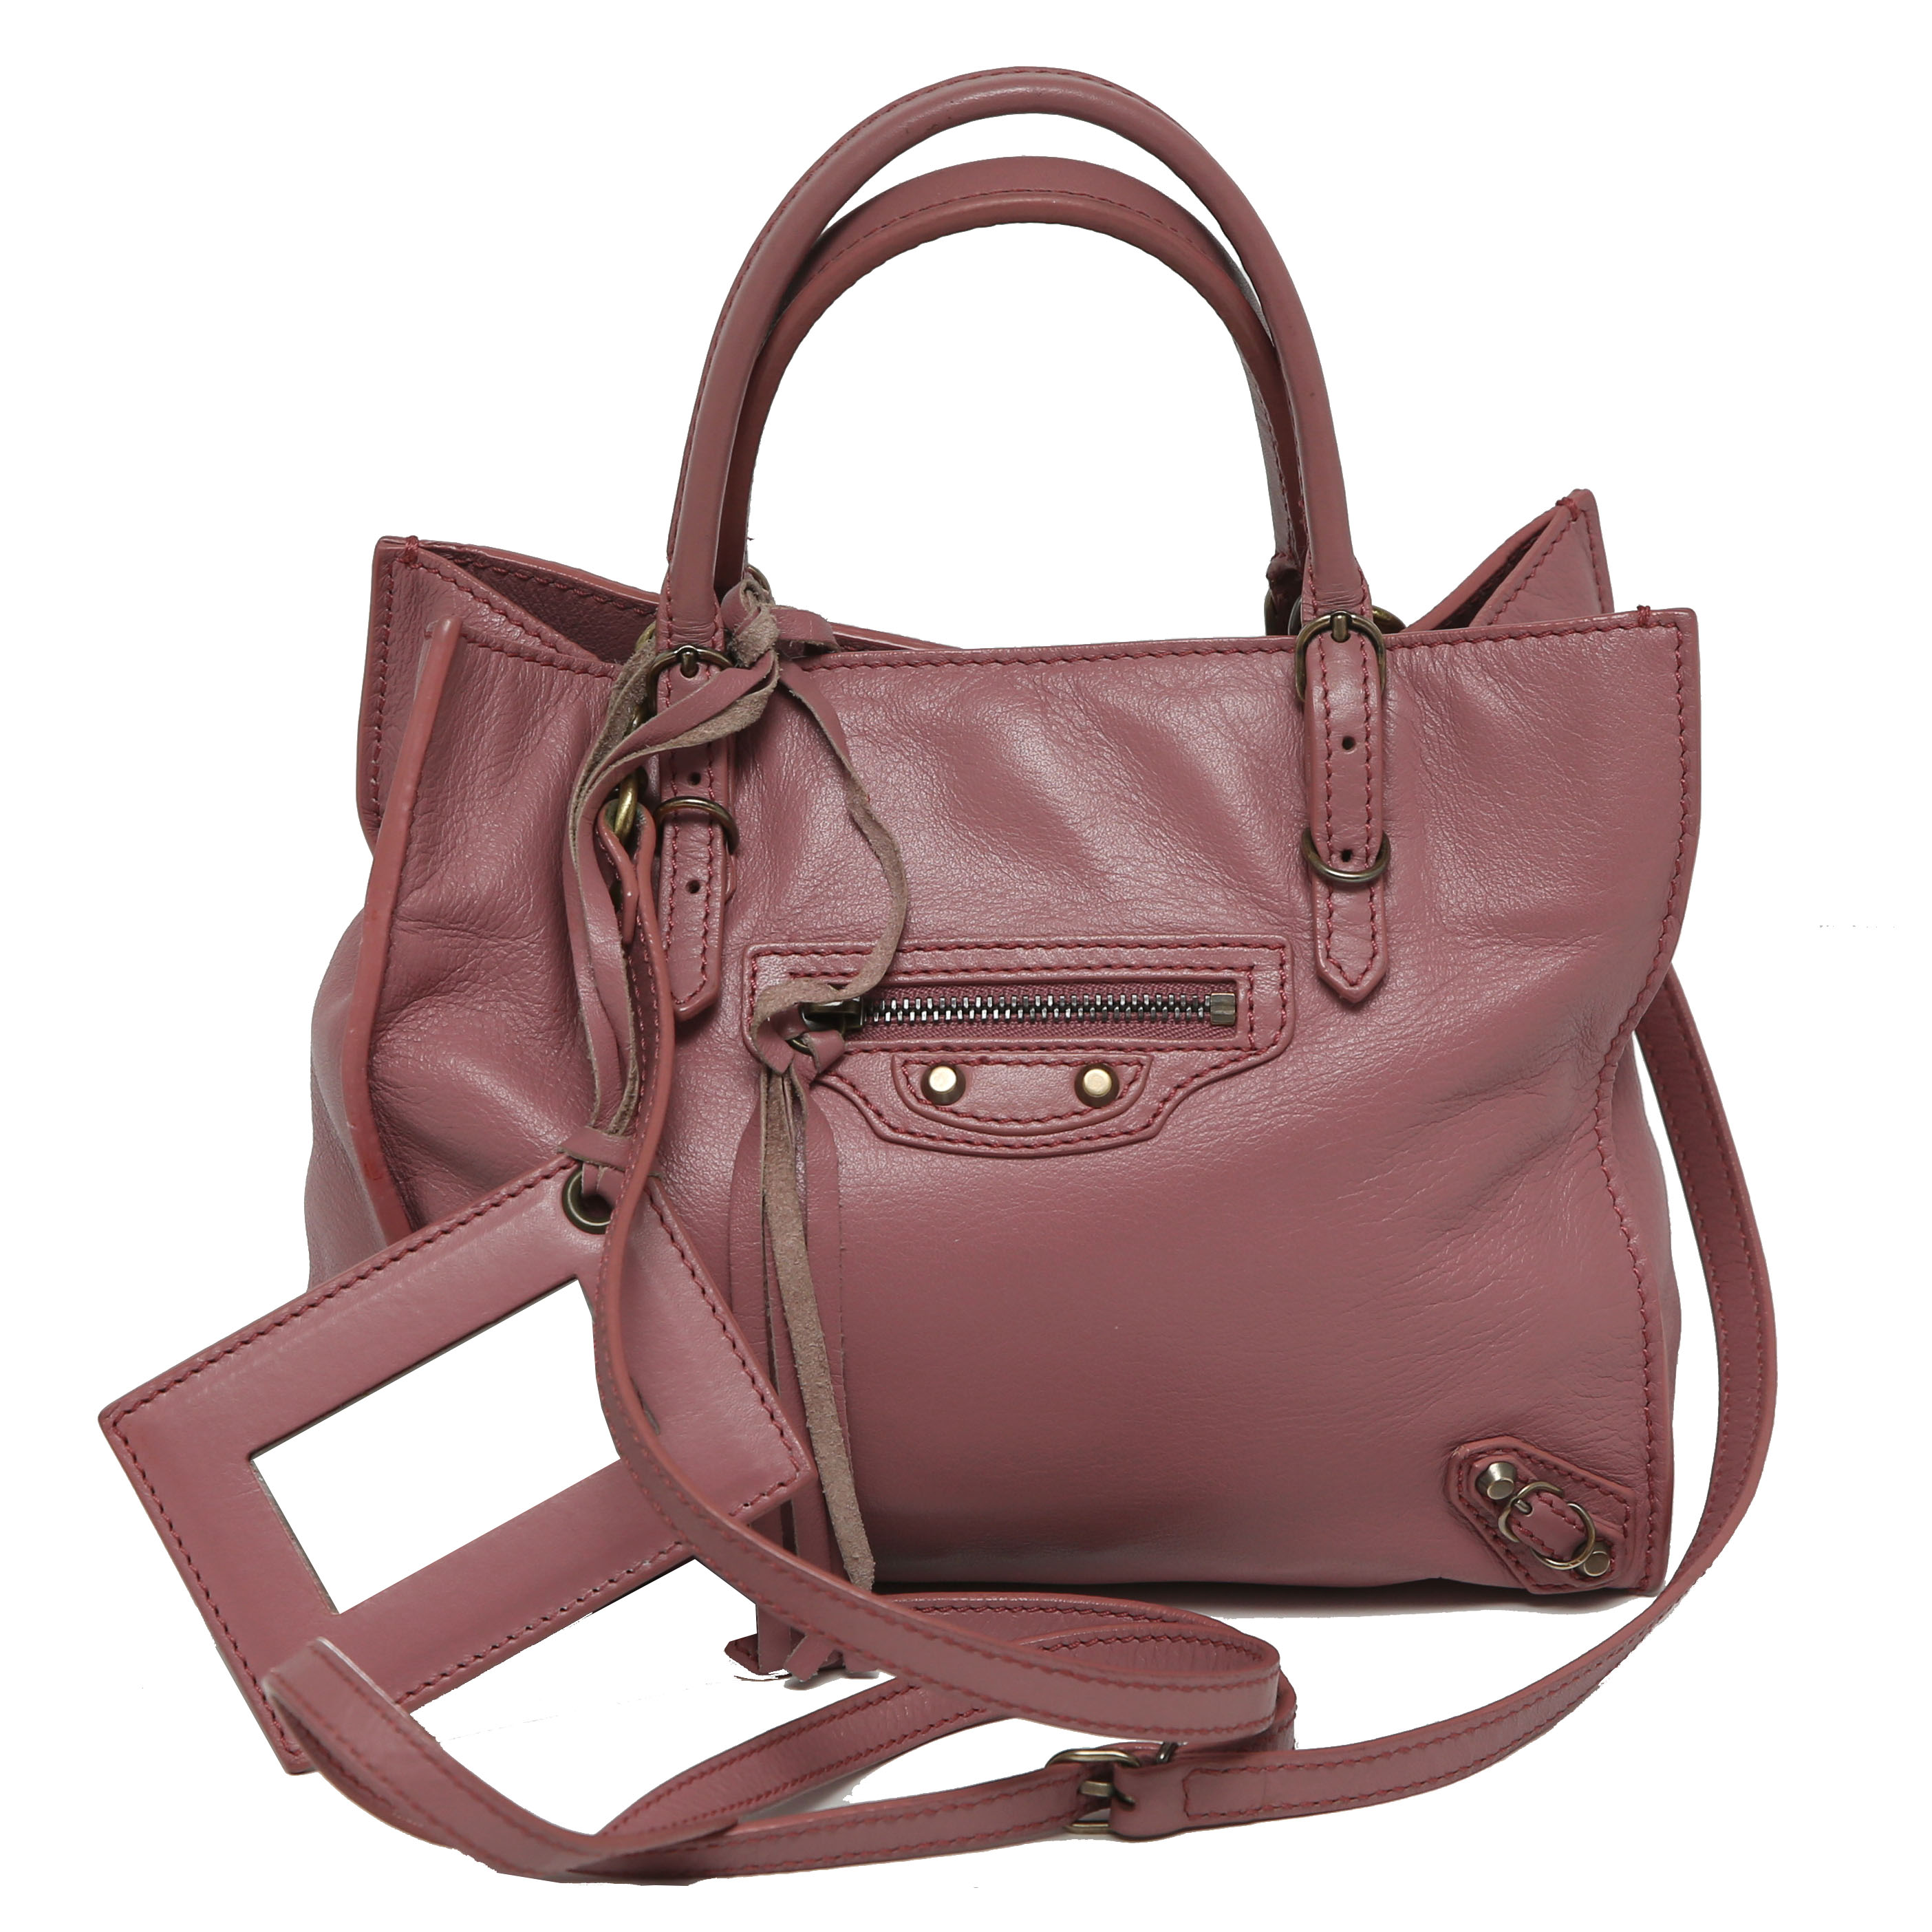 Balenciaga Leather Tote Bag Balenciaga | TLC